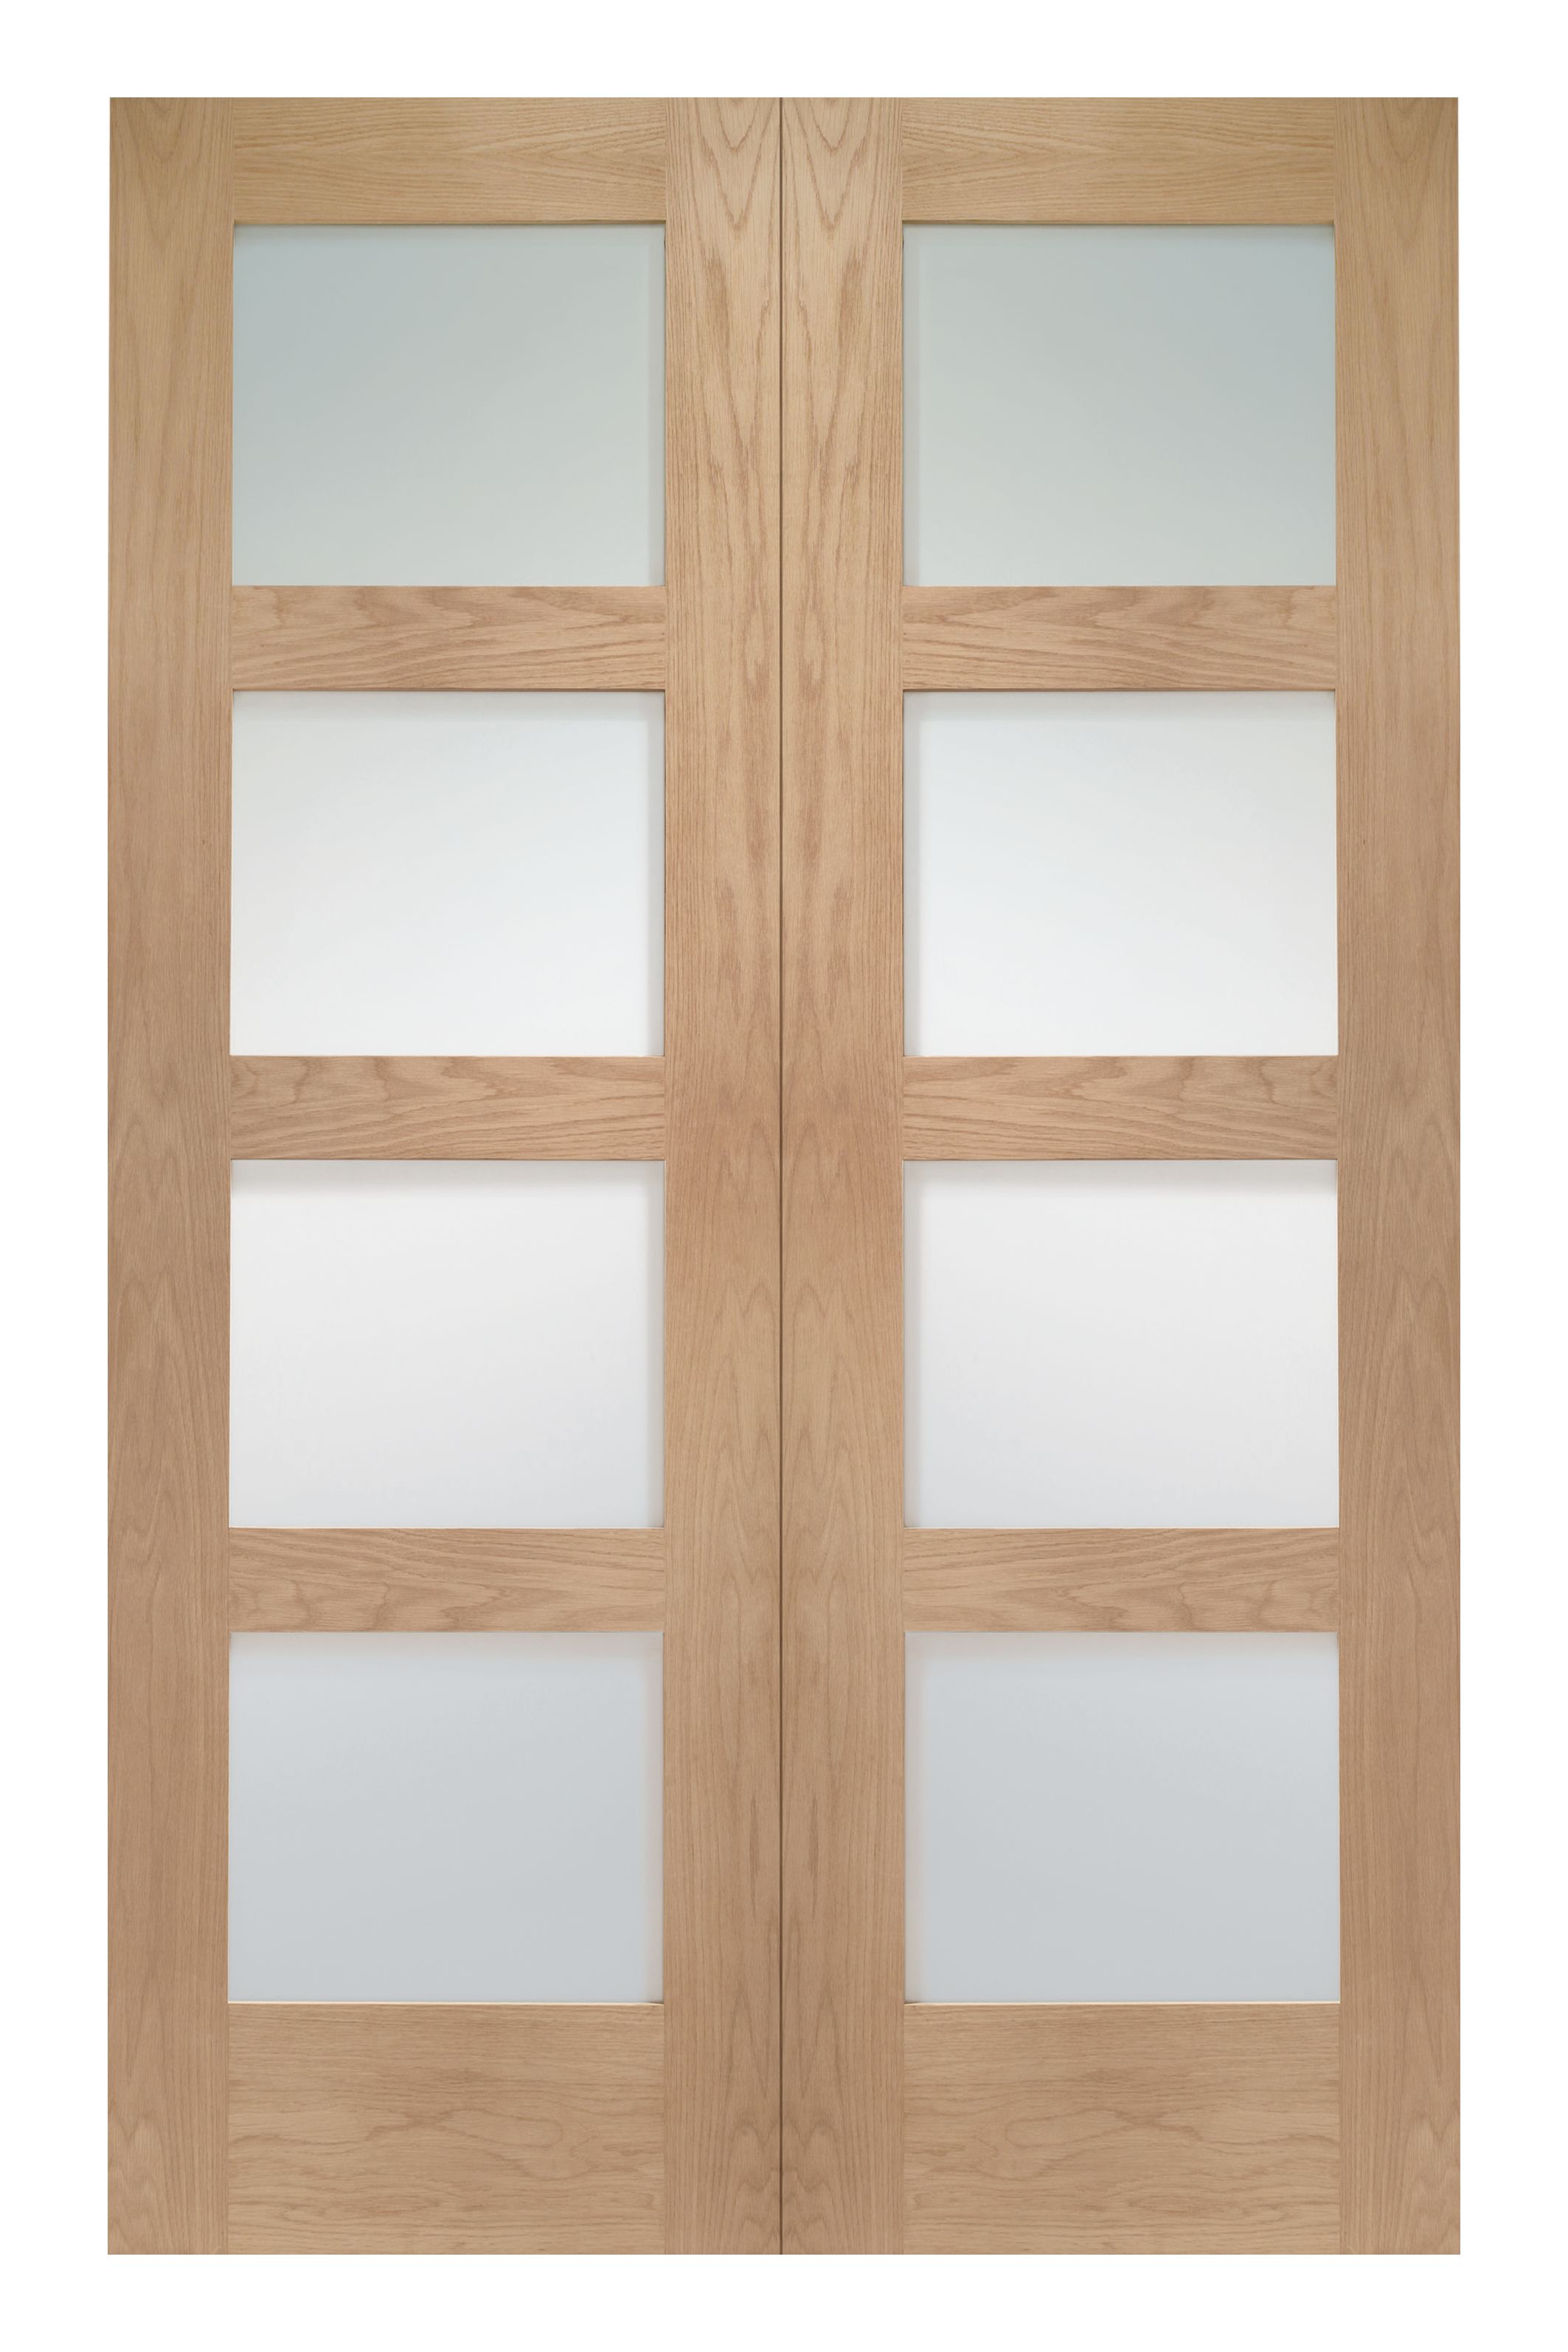 Wickes Marlow Fully Glazed Oak 4 Panel Rebated Internal Door Pair - 1981 mm